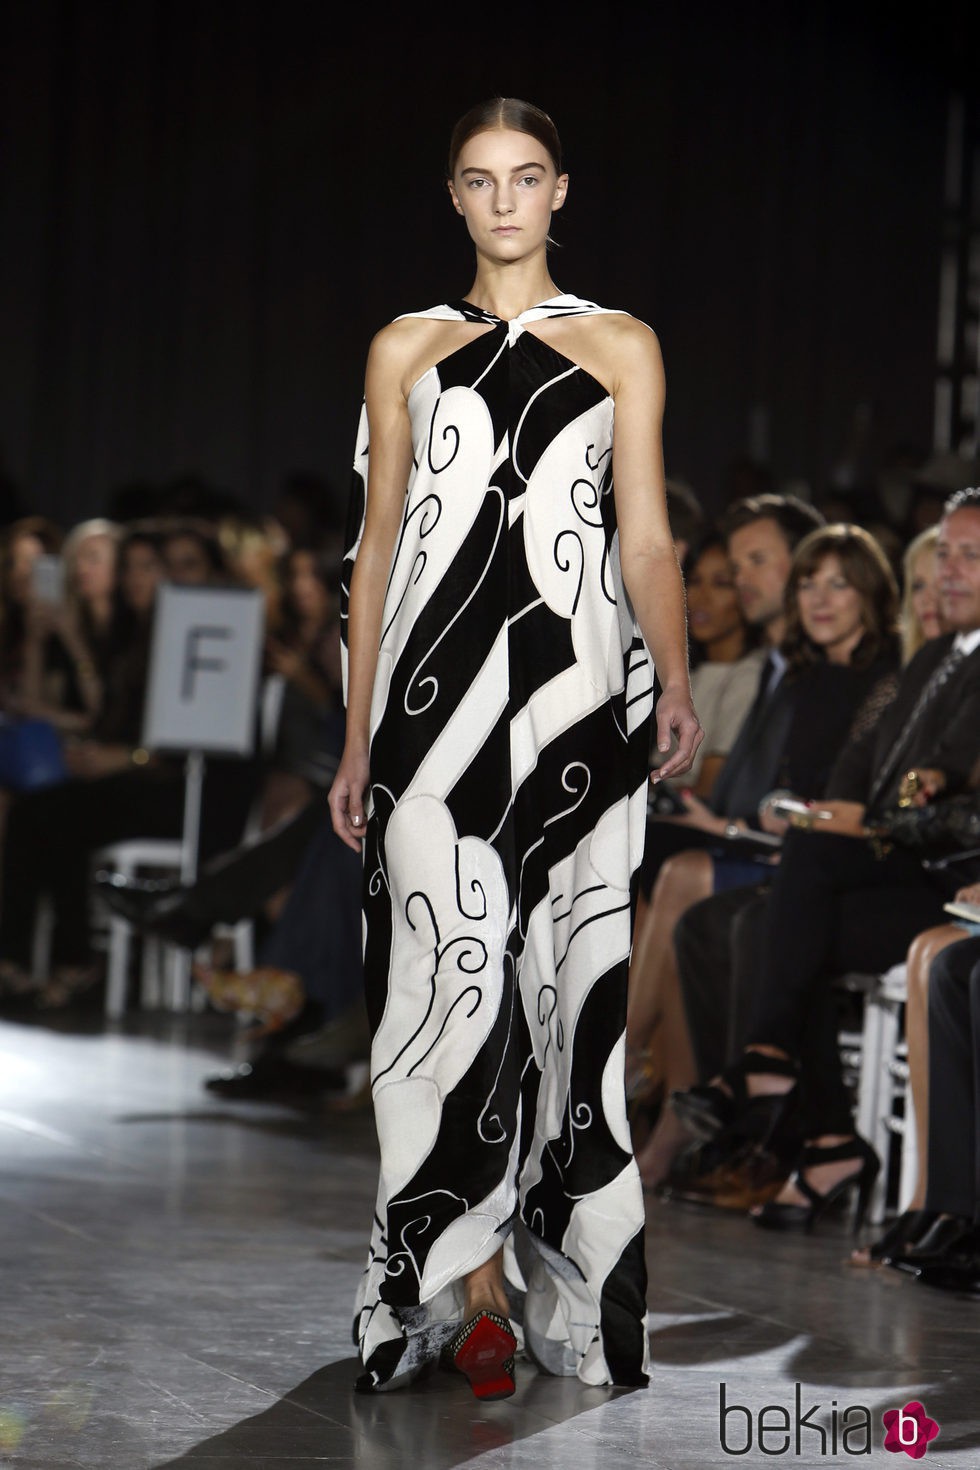 Vestido blanco y negro estampado de la colección de primavera/verano 2016 de Zac Posen en Nueva York Fashion Wee